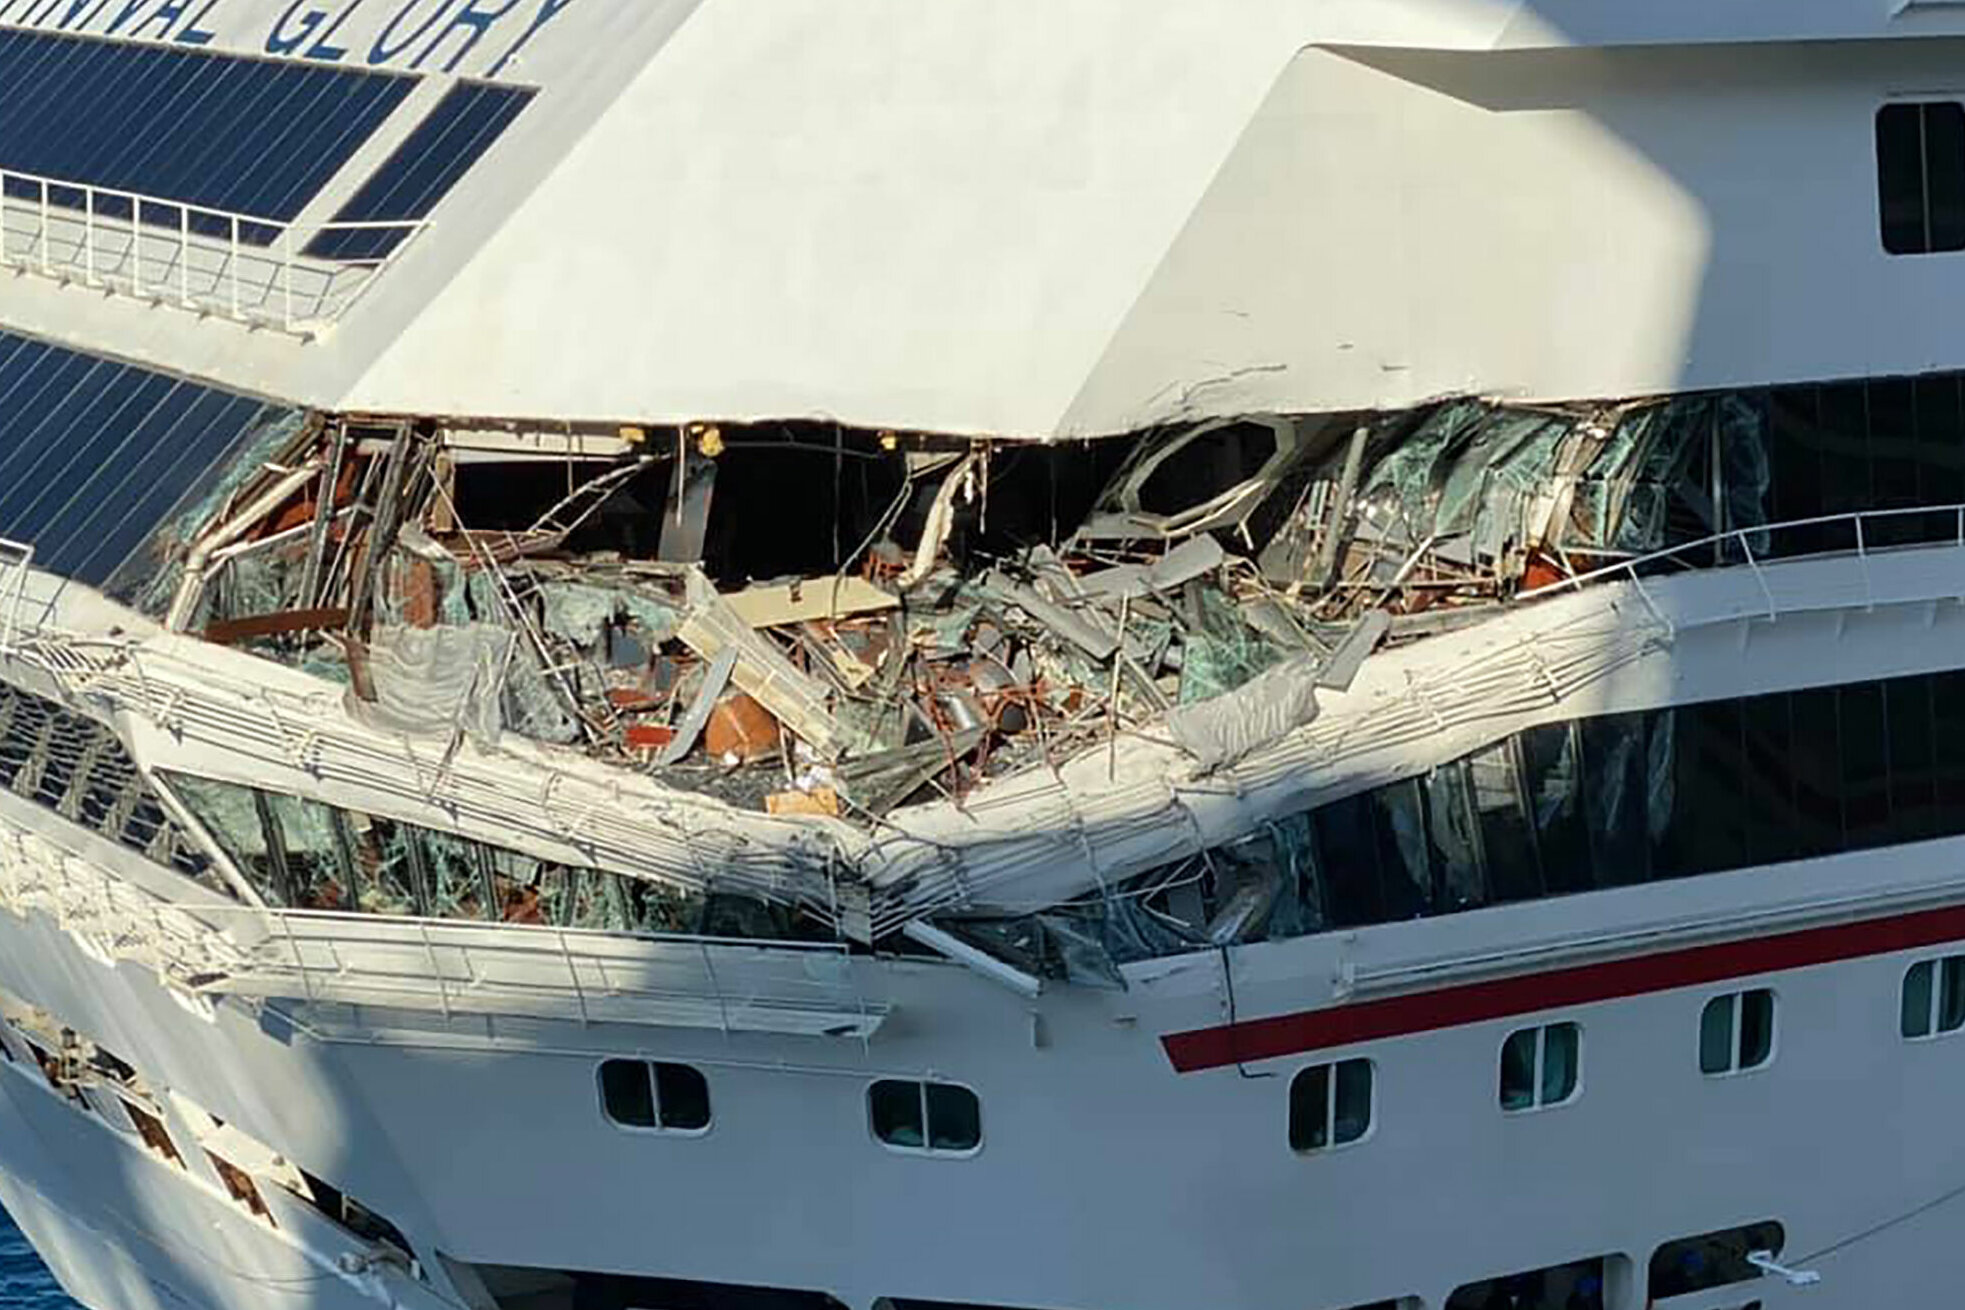 carnival cruise ship crash in mexico